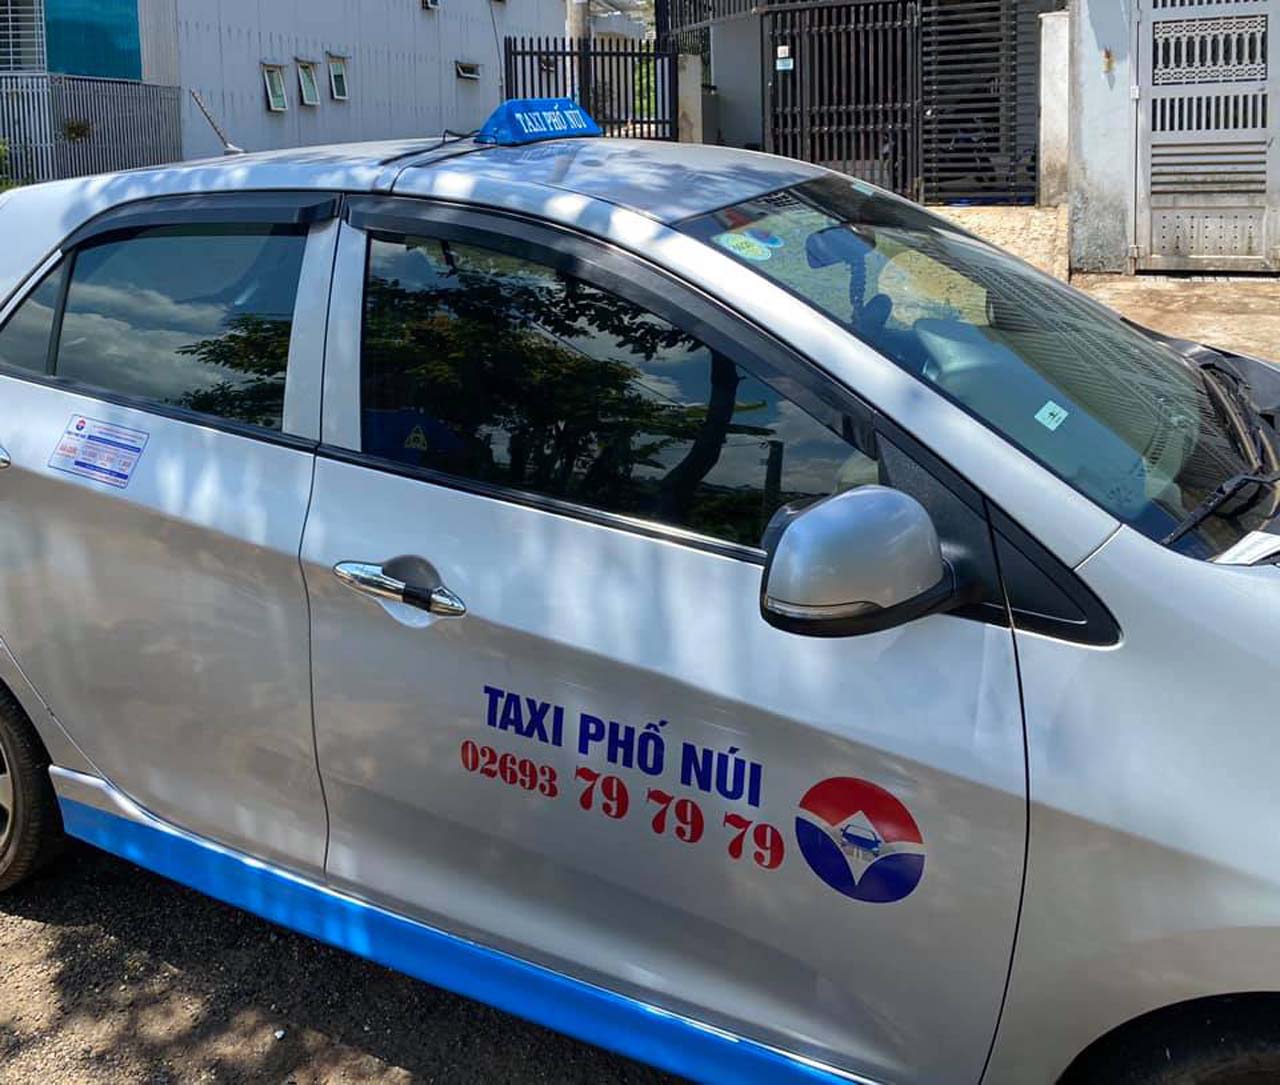 Taxi Phố Núi Gia Lai: 02693797979